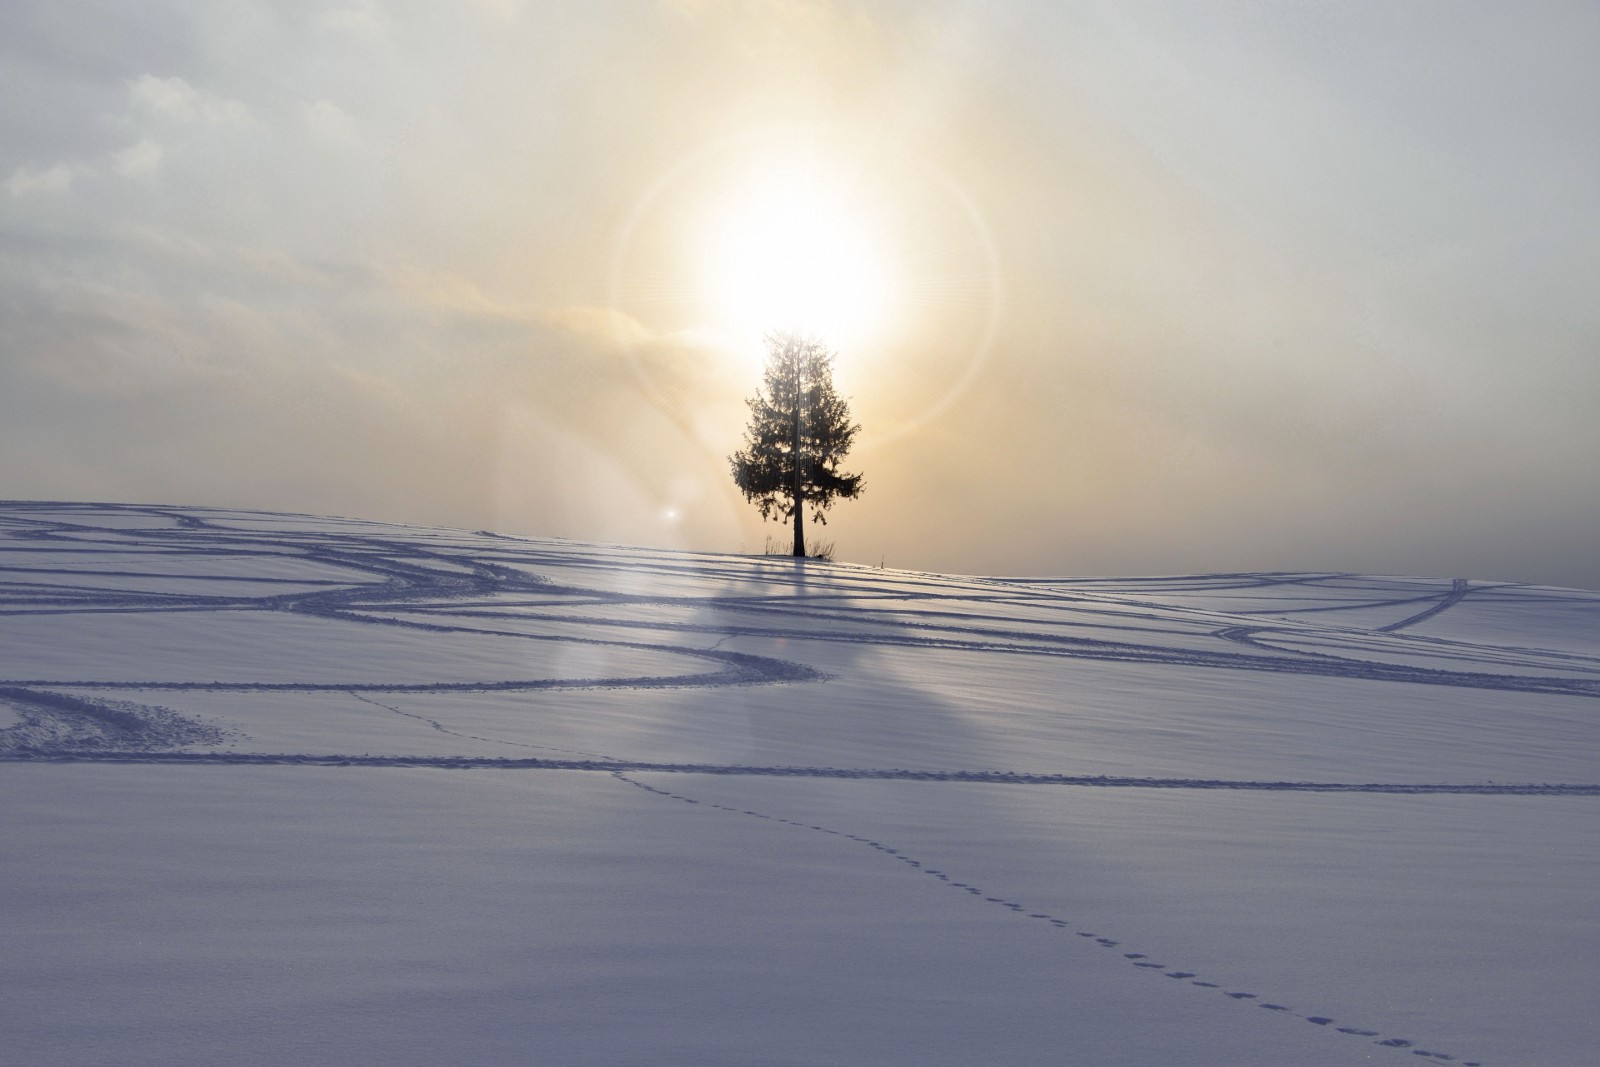 Winter phenomena in Hokkaido